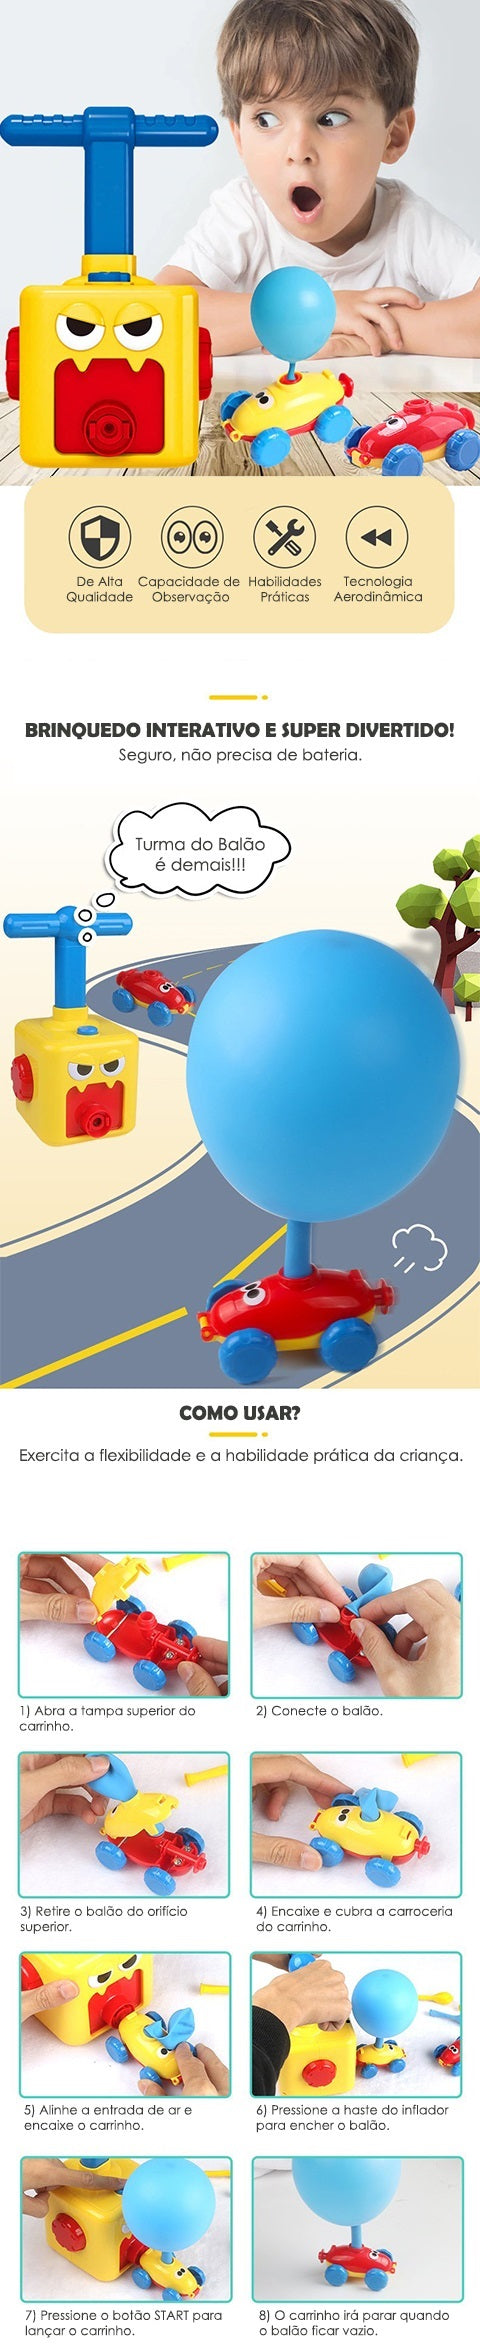 Brinquedo Turma do Balão, Interativo e Divertido